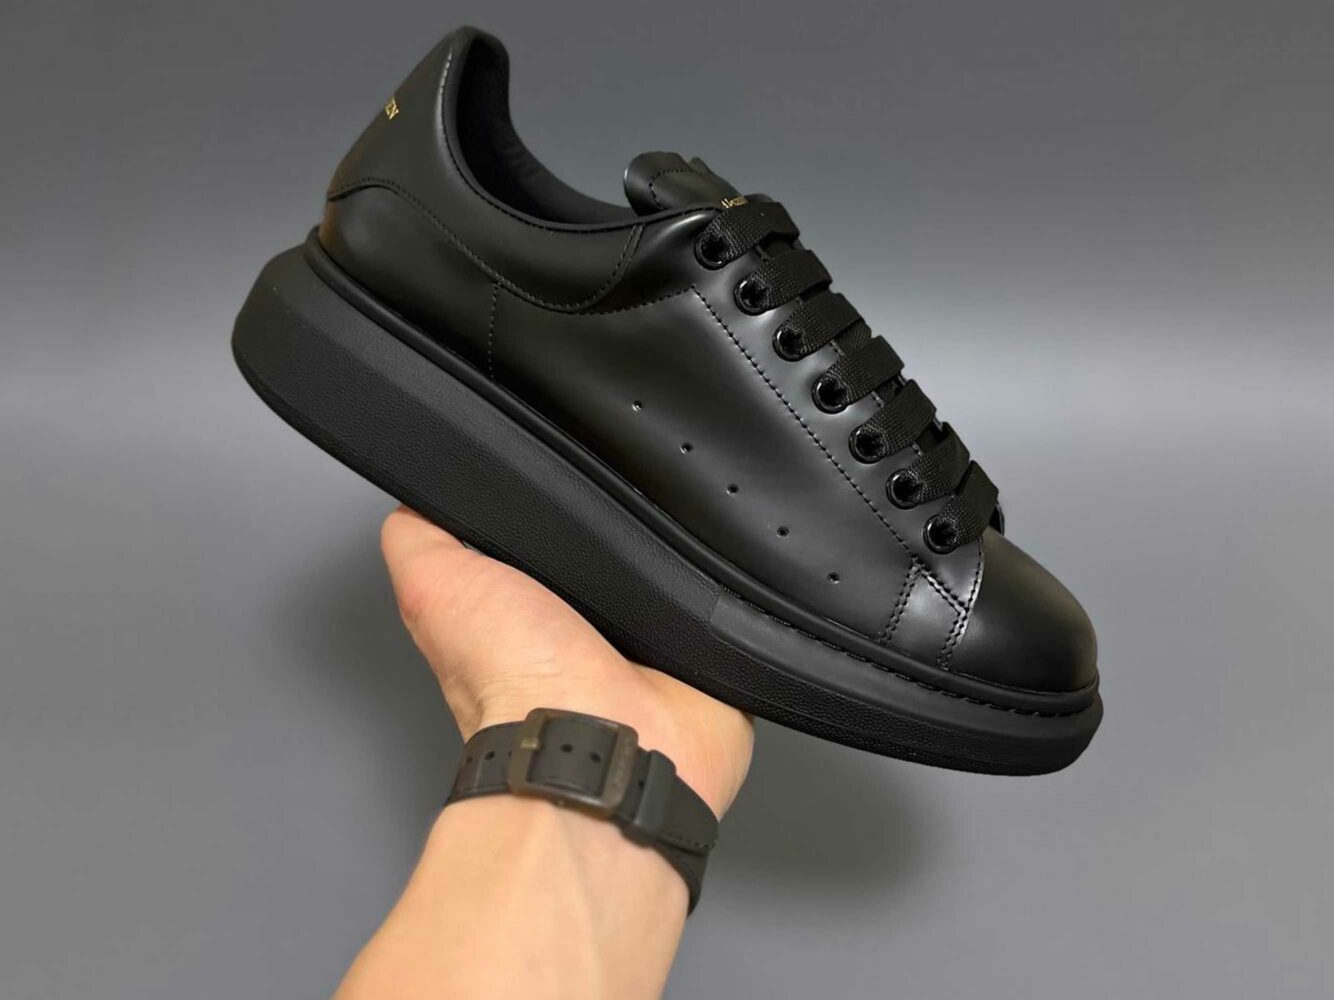 alexander mcqueen sneaker in black 553761WHGP01000 купить